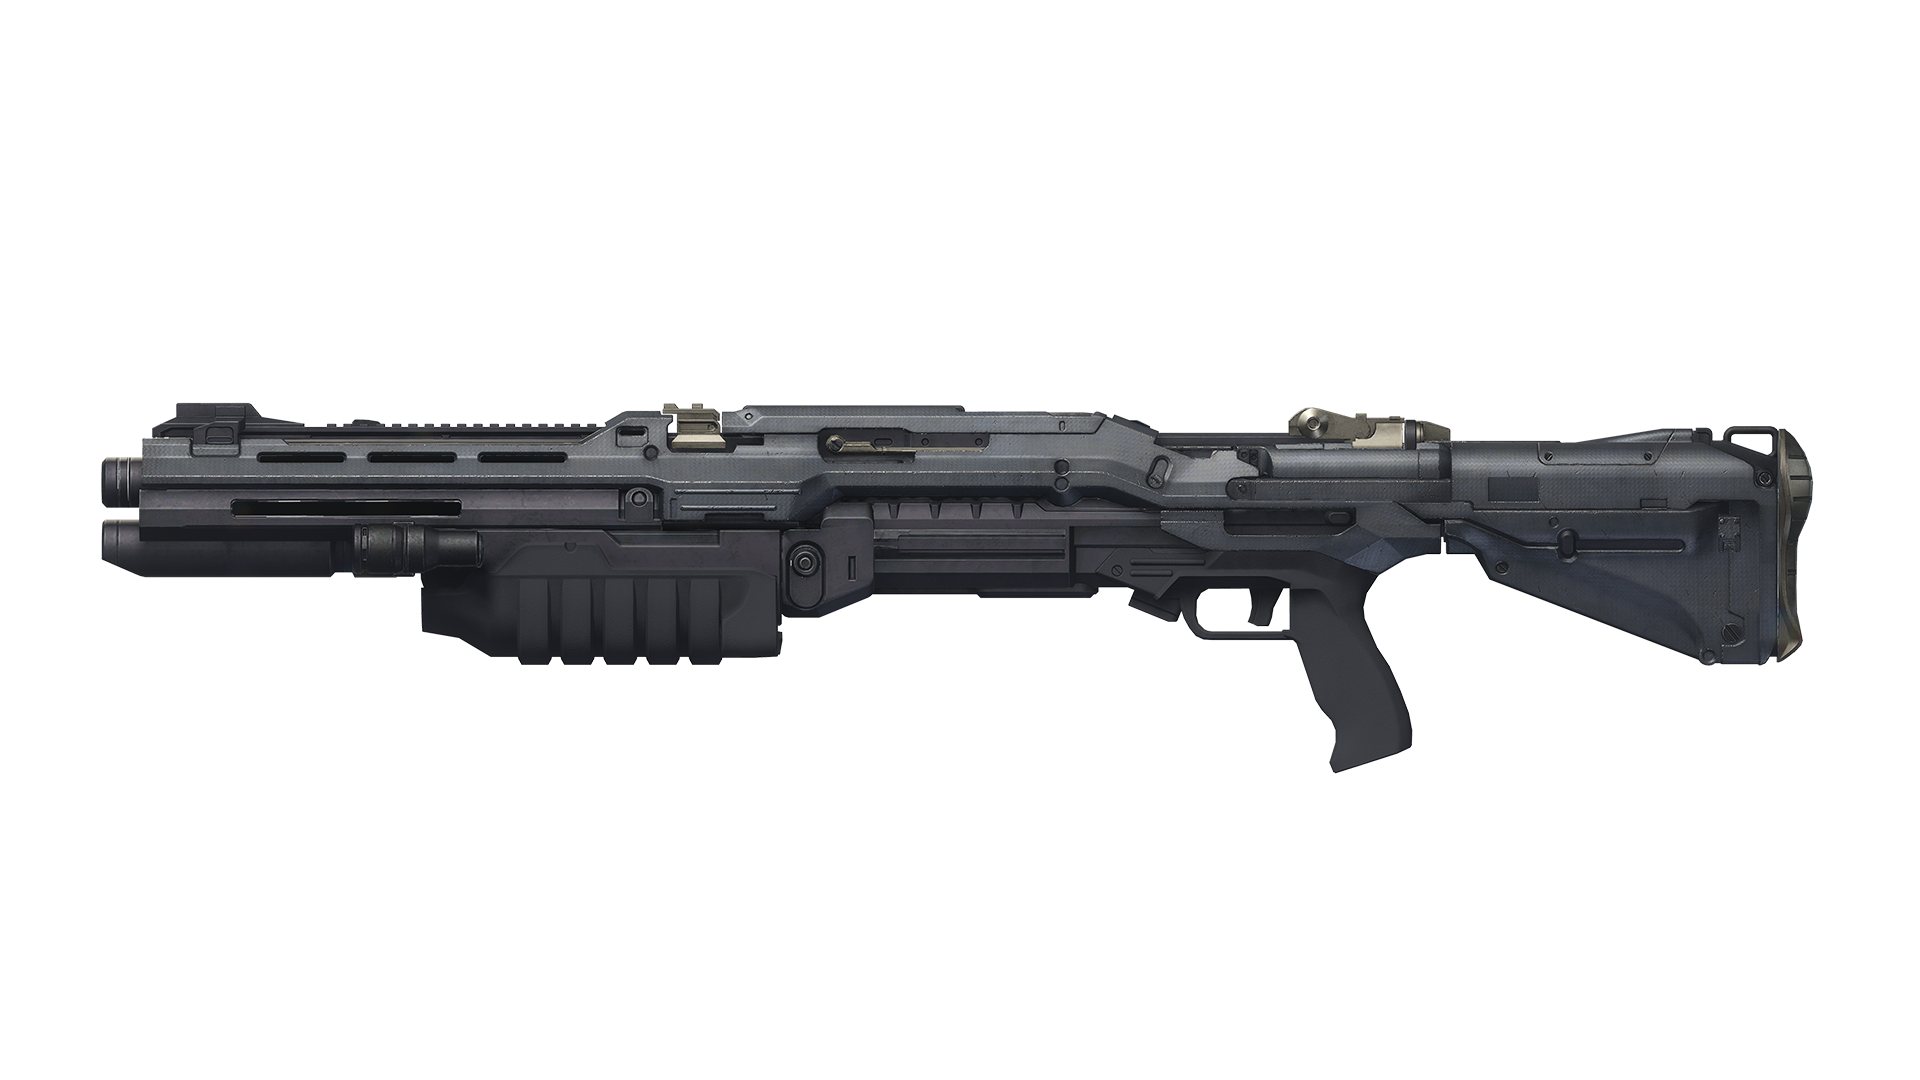 H5G render shotgun.png